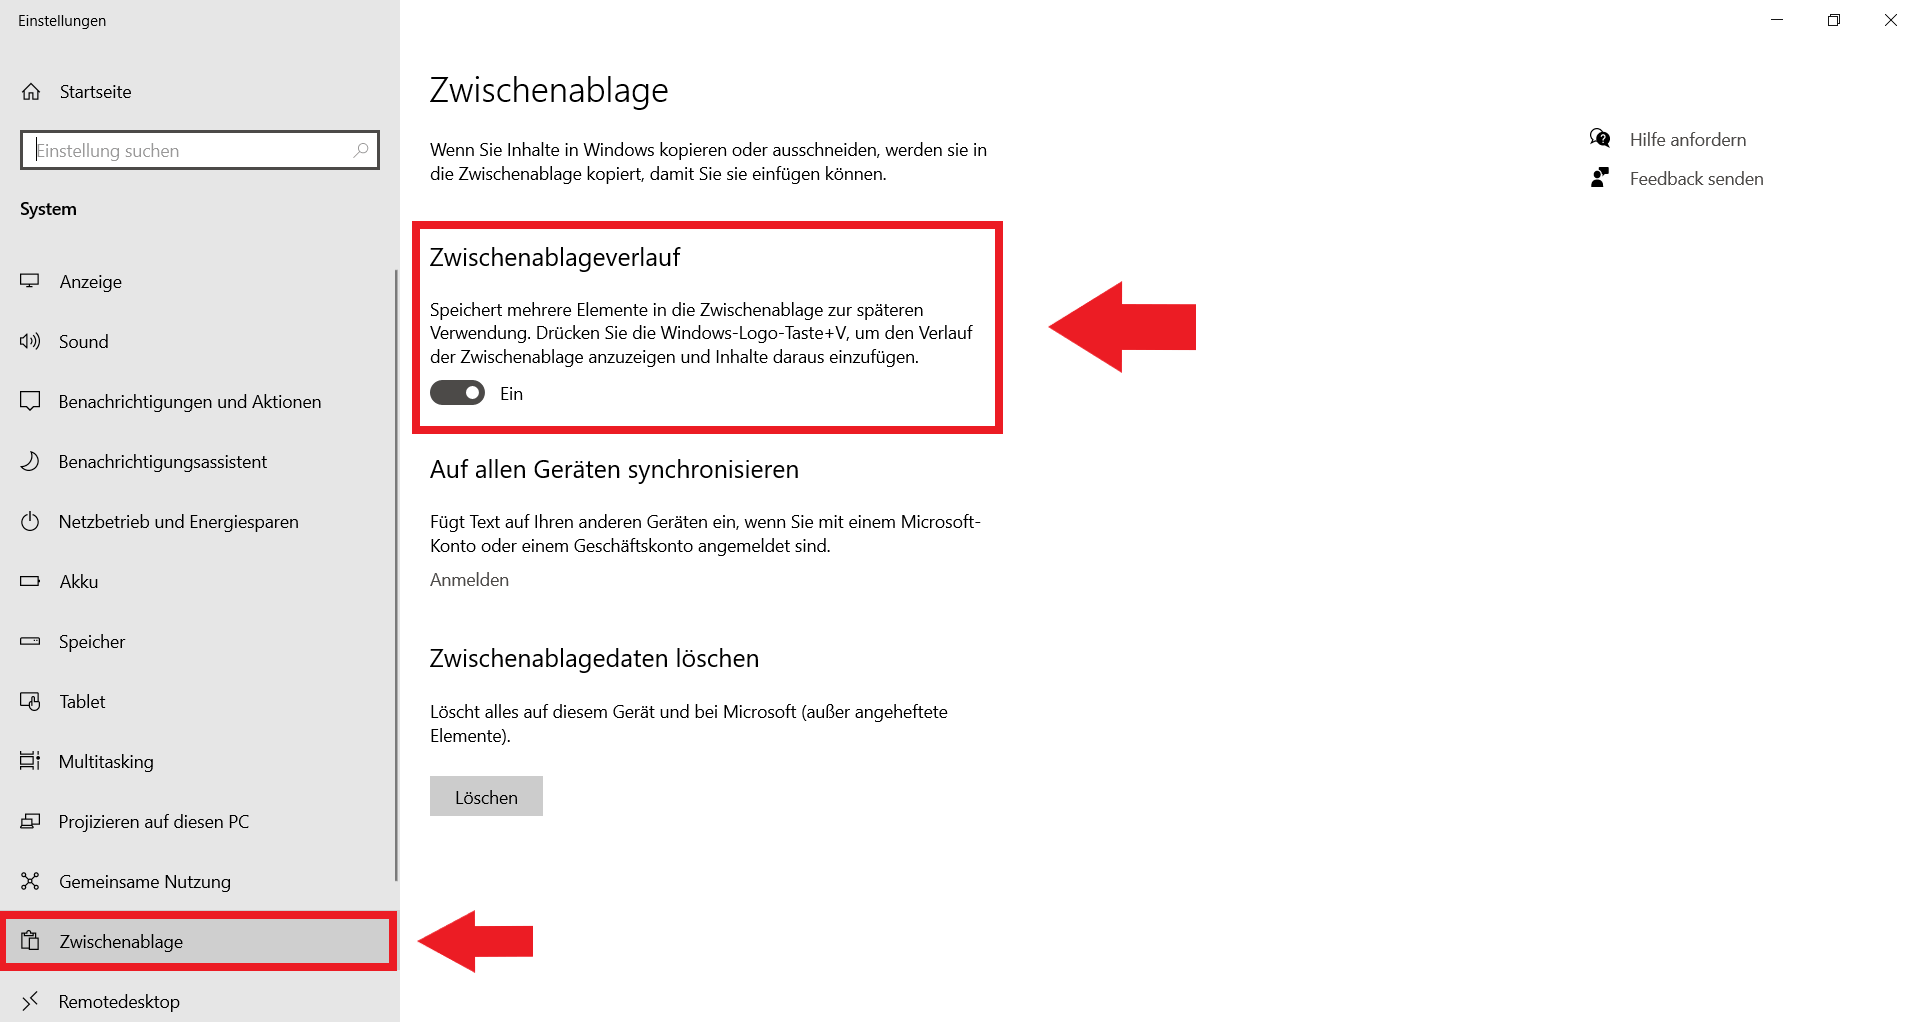 Zwischenablage in den Windows-Einstellungen mit dem „Zwischenablageverlauf“